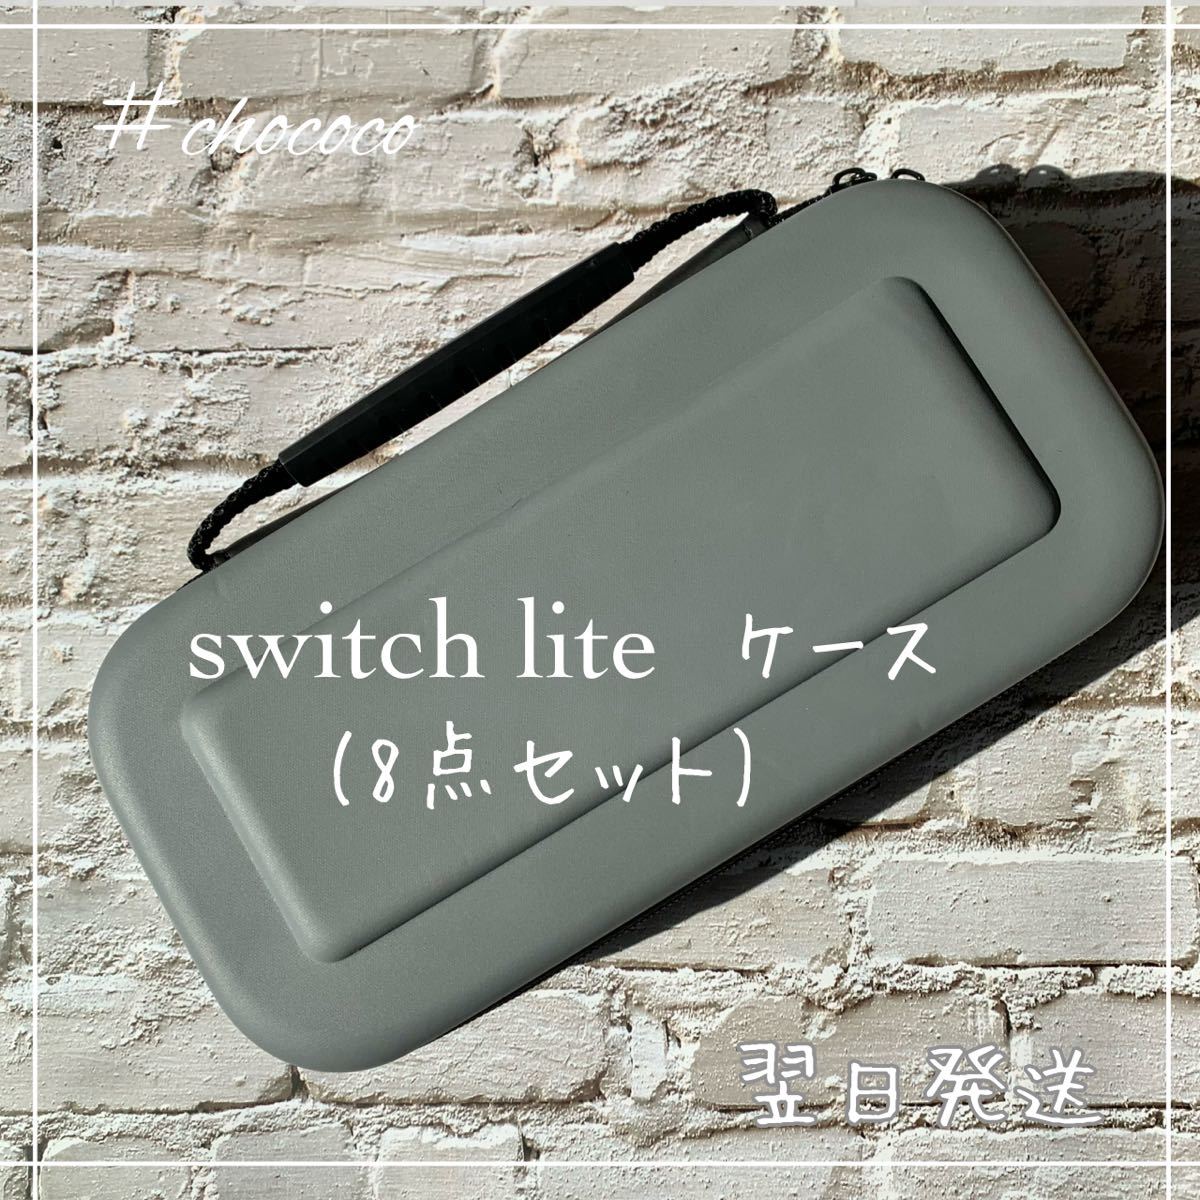 02、【灰】Switch lite ケース スイッチライトカバー 【8点セット】